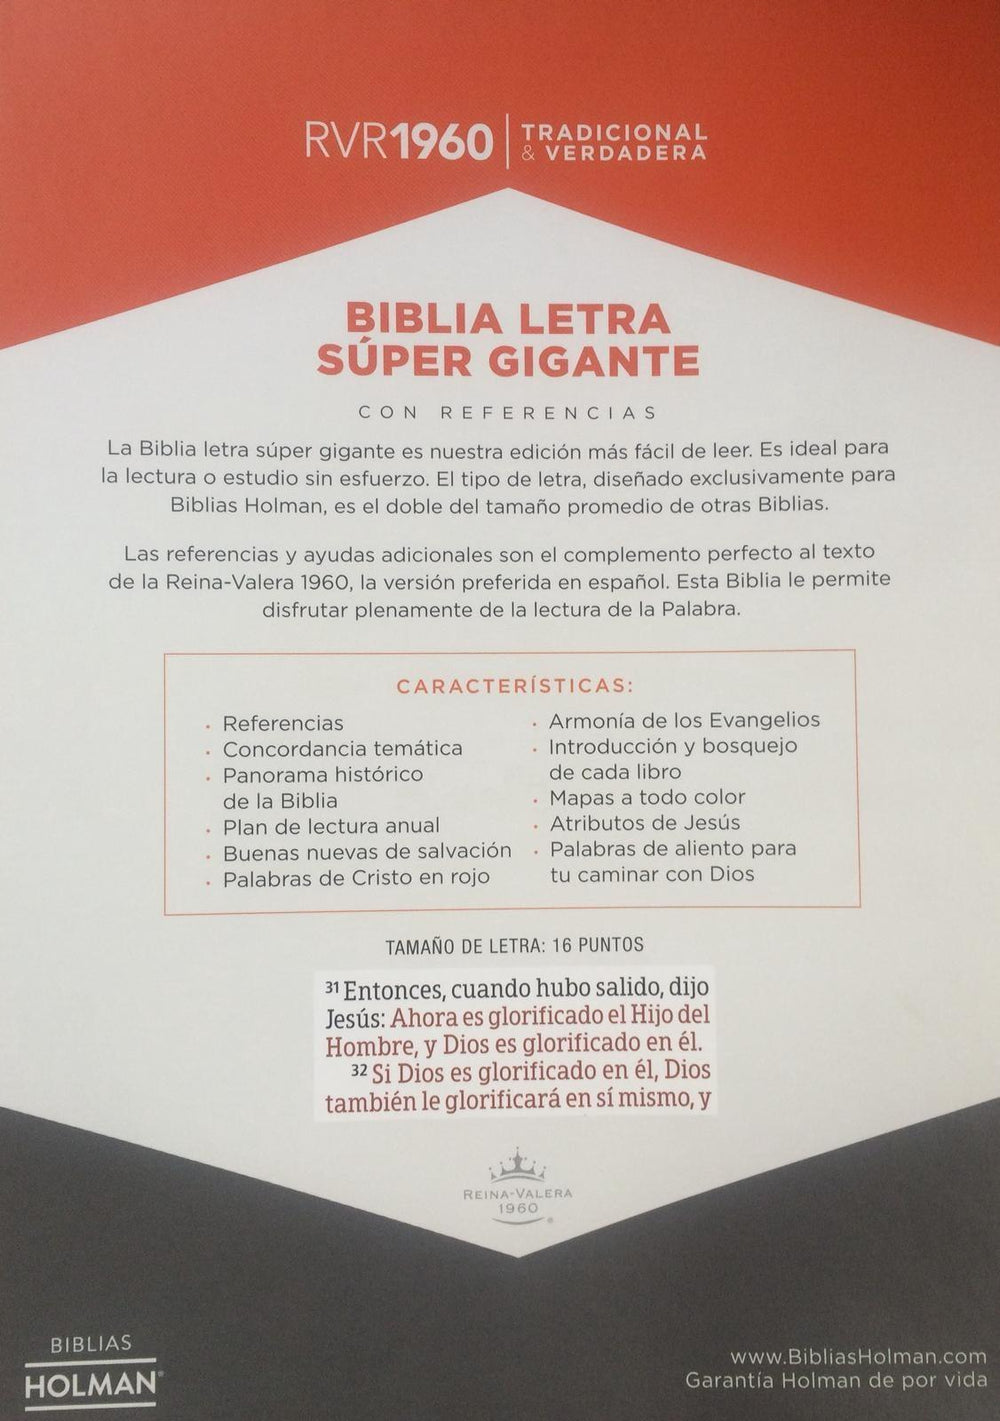 Santa Biblia Letra Gigante RVR 1960 - Pura Vida Books